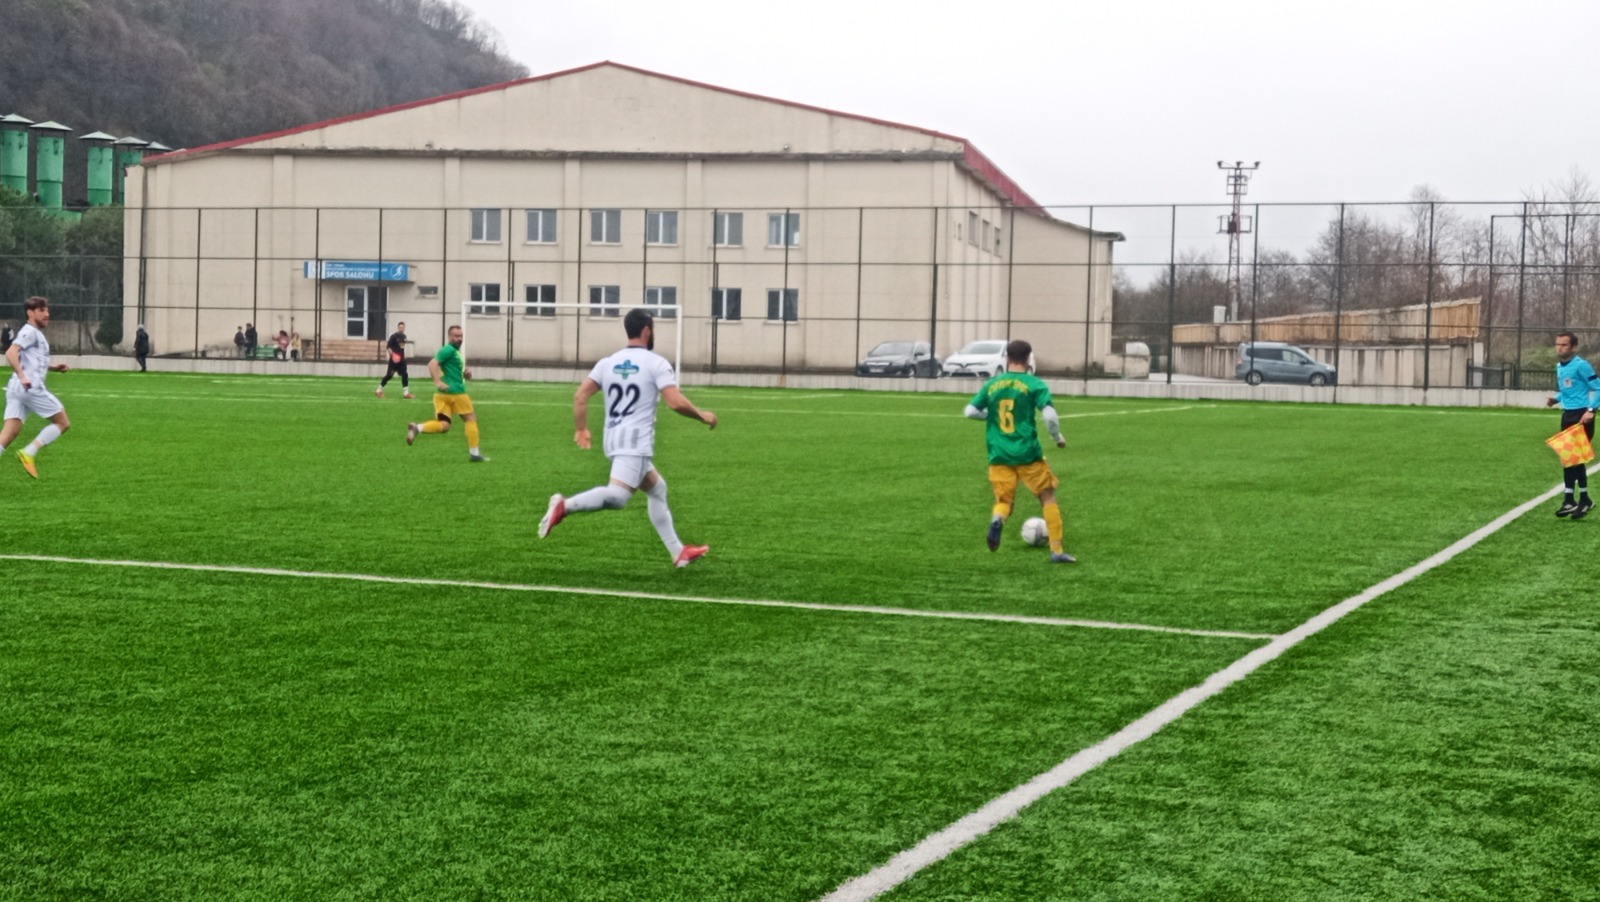 Çiftlikspor ,Play-off ilk maçında sahasında Güneysuspor’a 5-2 mağlup oldu